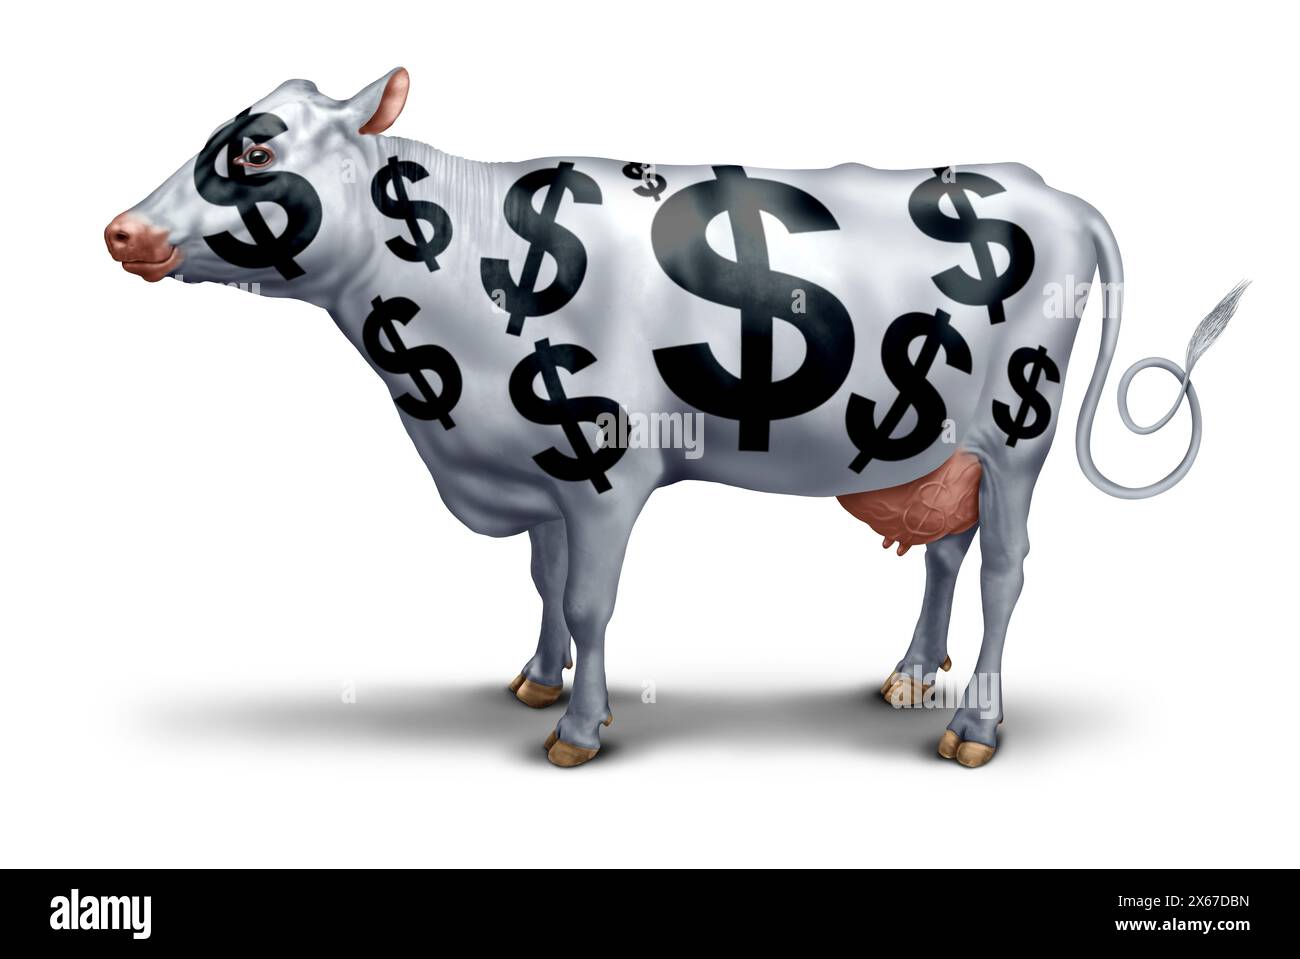 Cash Cow Business Success Symbol für ein profitables Unternehmen oder eine gewinnbringende Dienstleistung, die Gewinne und wachsenden Wohlstand generiert, als Metapher für Rentabilität wie Kühe. Stockfoto